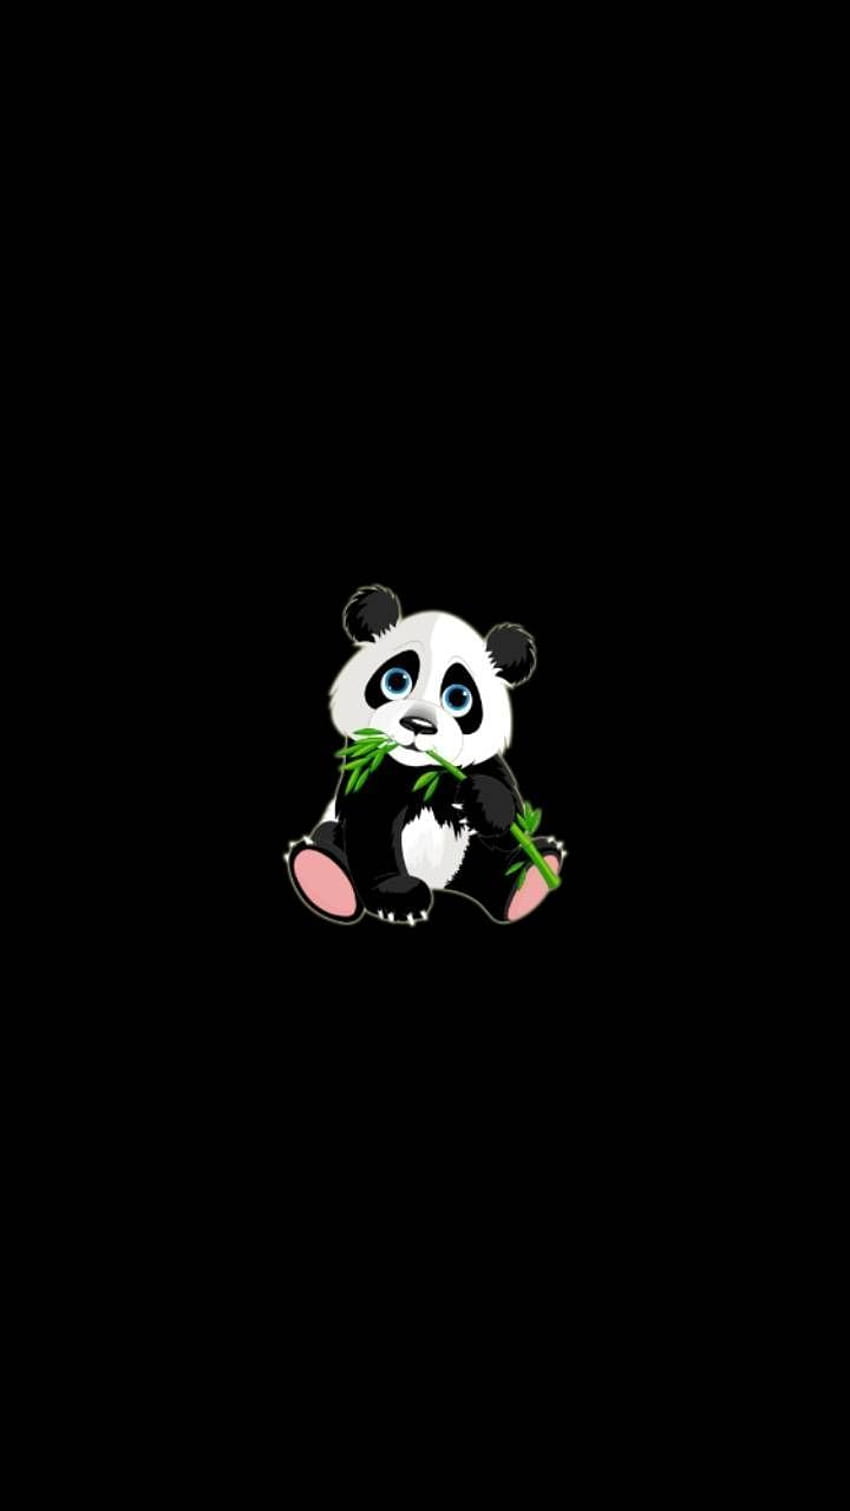 Dark Panda, black and white panda HD phone wallpaper